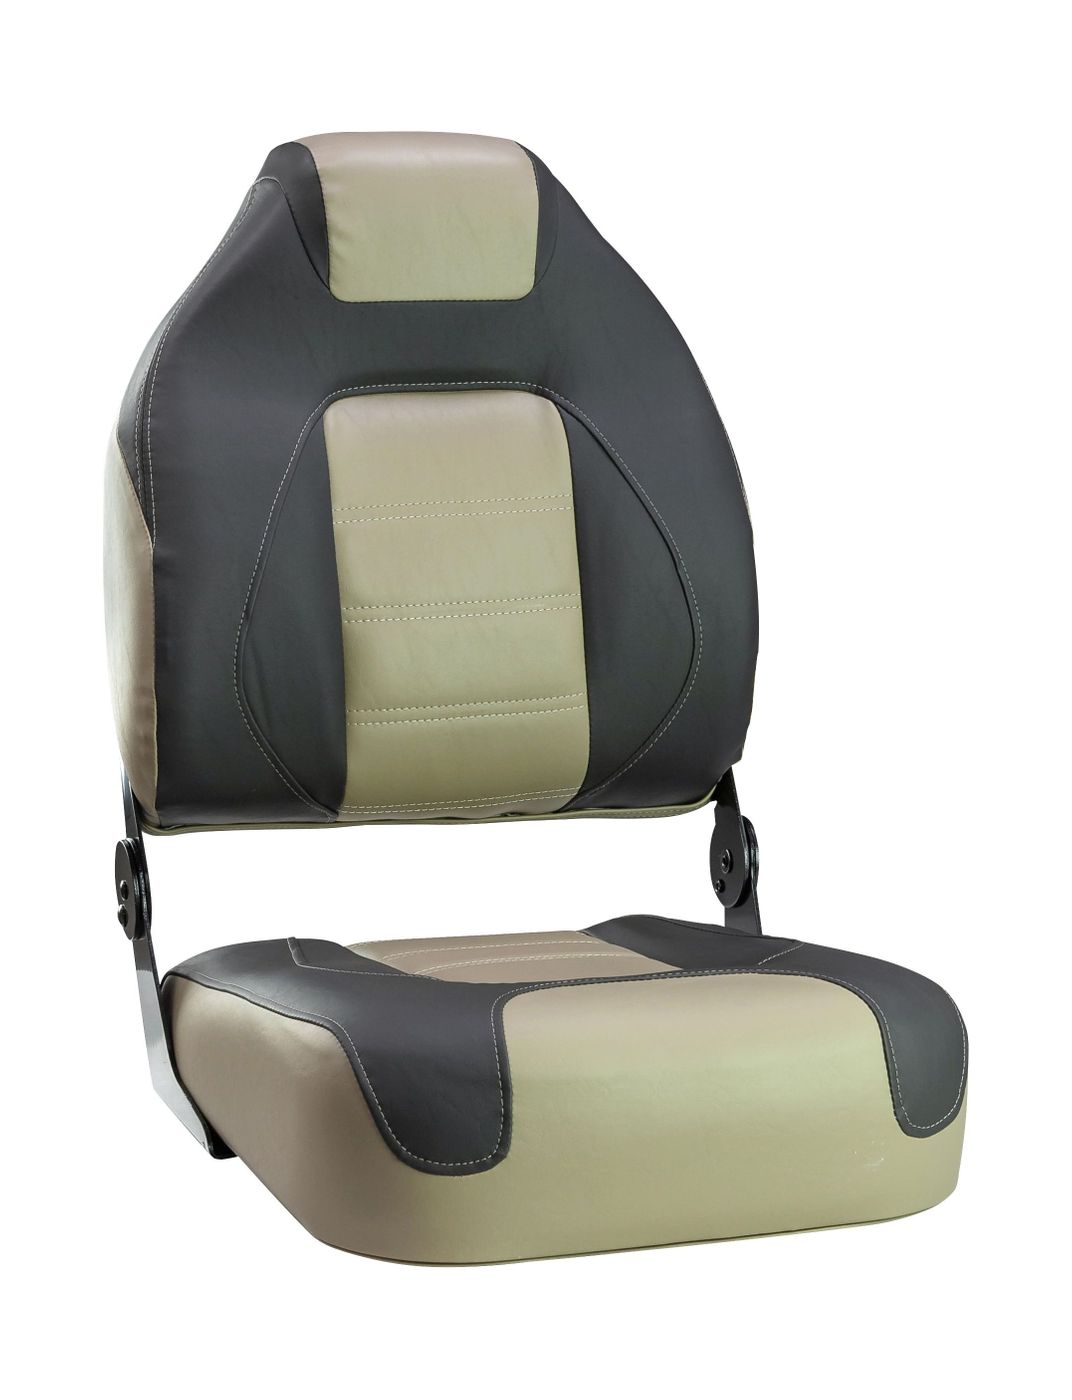 Кресло складное, цвет темно-серый/коричневый 1062583 фен pioneer hd 1010 1000 вт коричневый серый